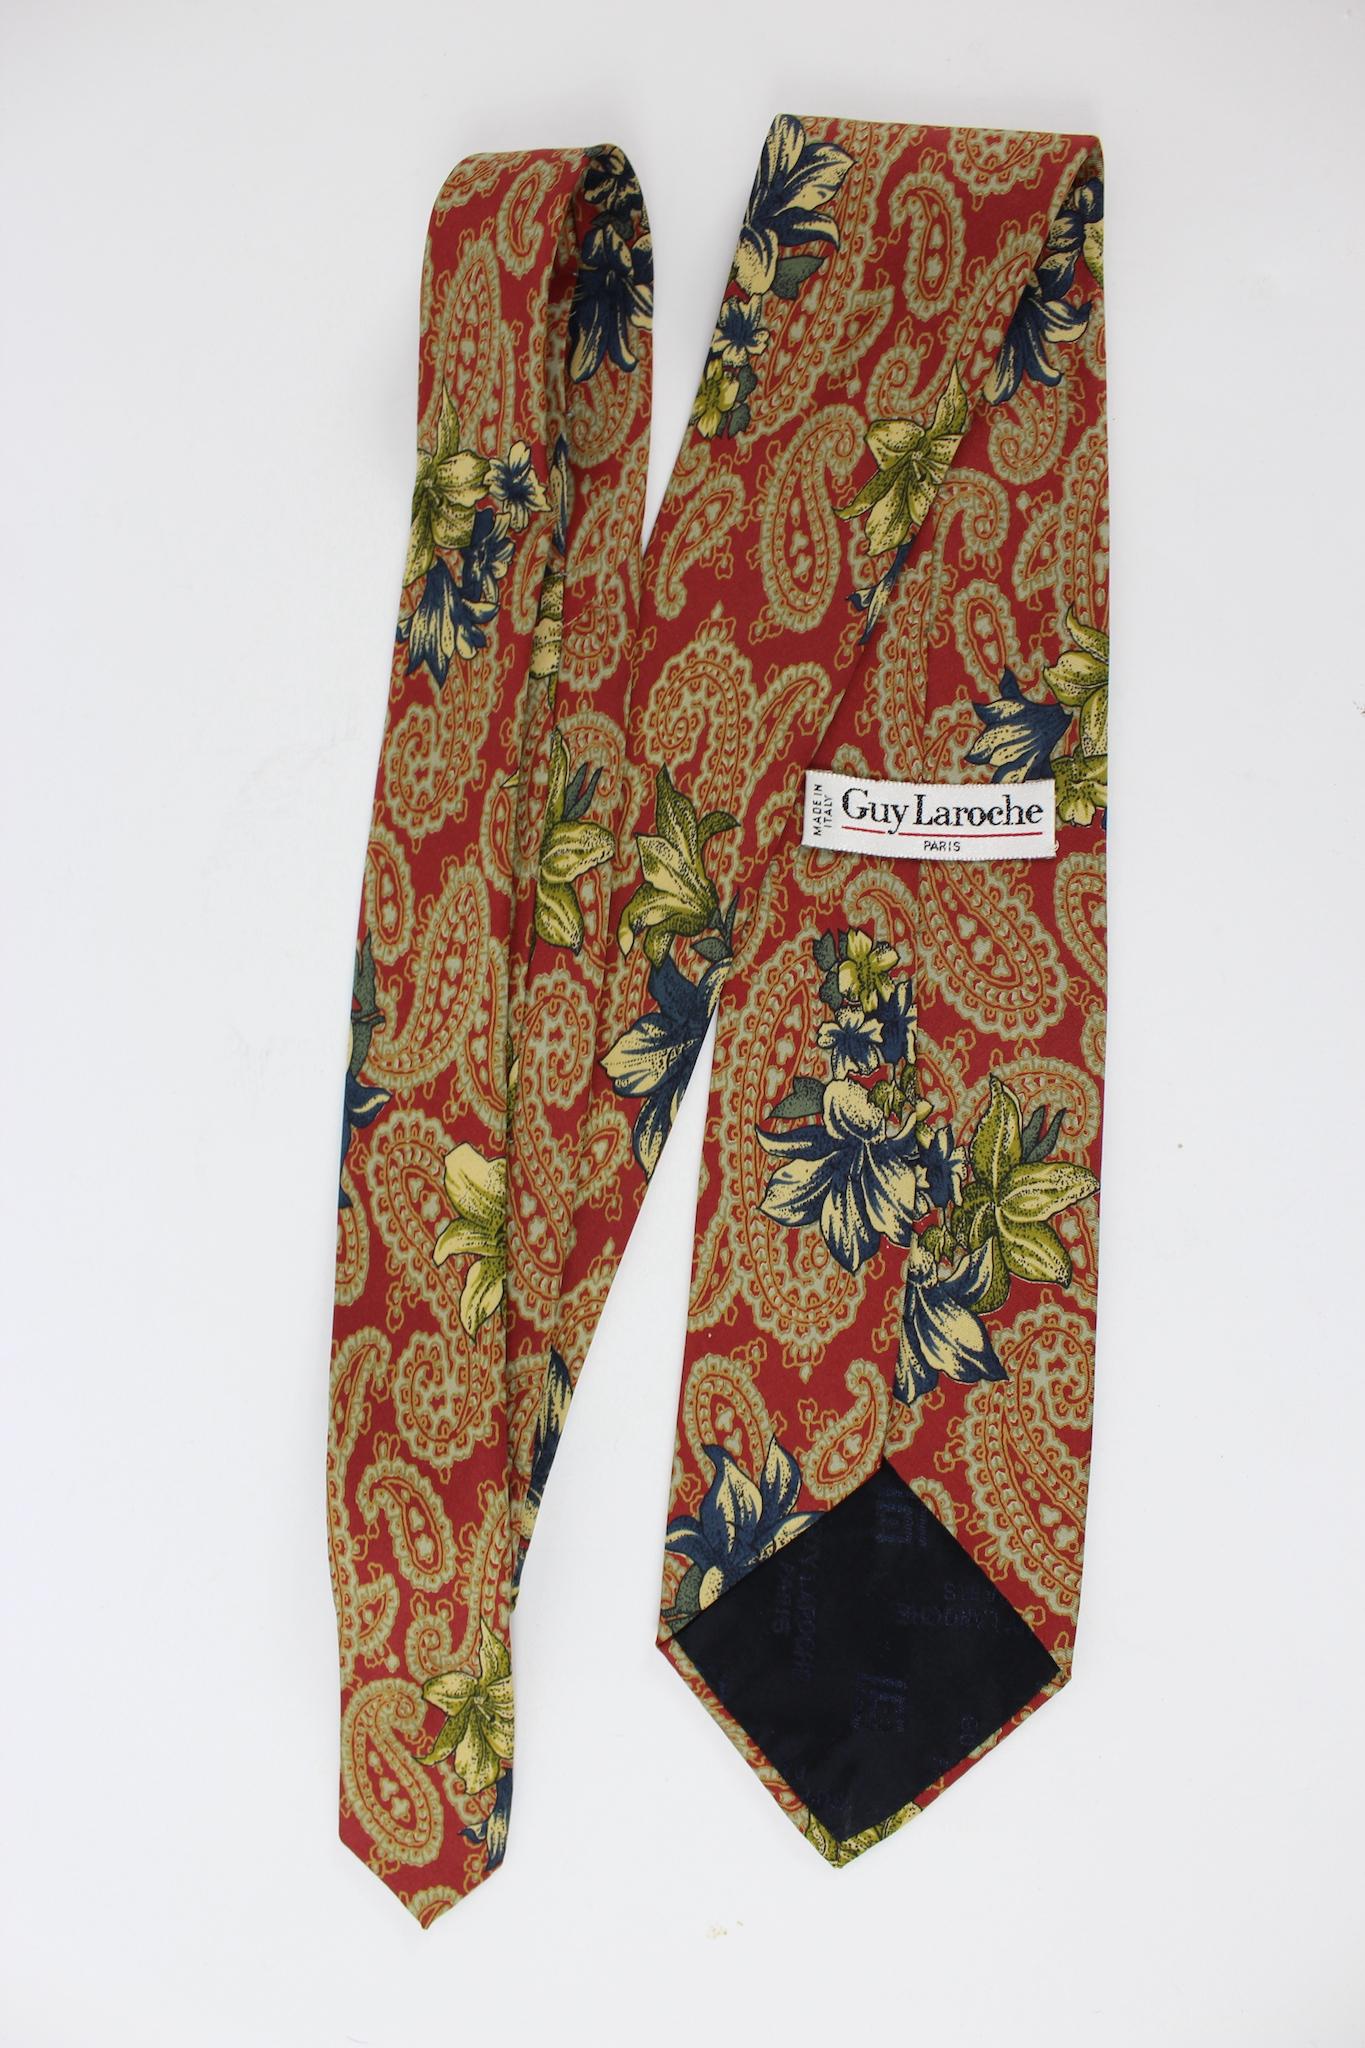 Guy Laroche Krawatte mit Blumenmuster aus den 80er Jahren. Rote, beige und blaue Farbe mit Paisley und Blumenmuster. 100% Seide. Hergestellt in Italien.

Länge: 150 cm
Länge: 9 cm